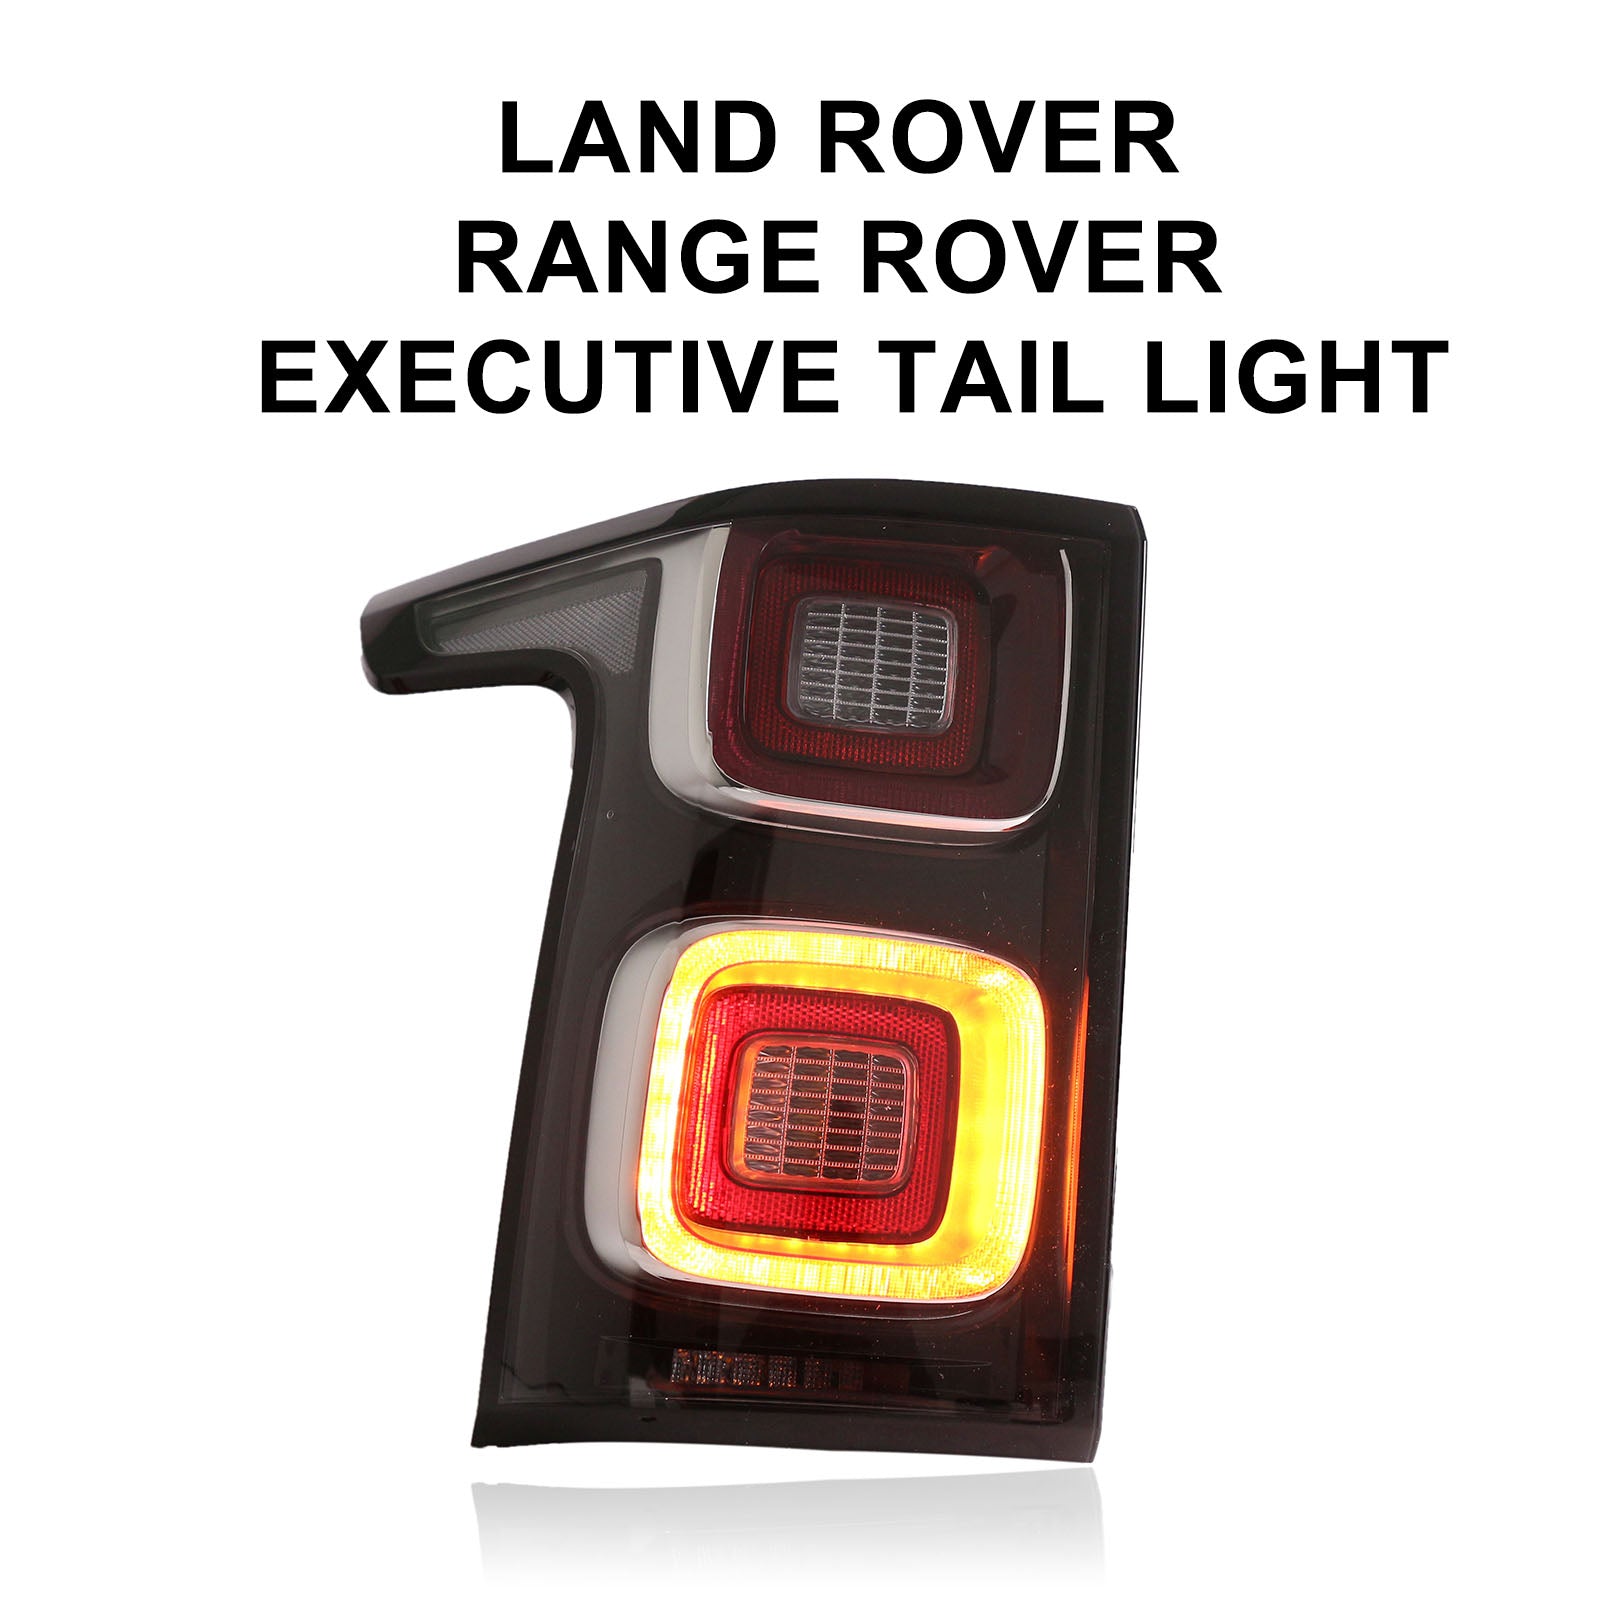 Land Rover – JOLUNG